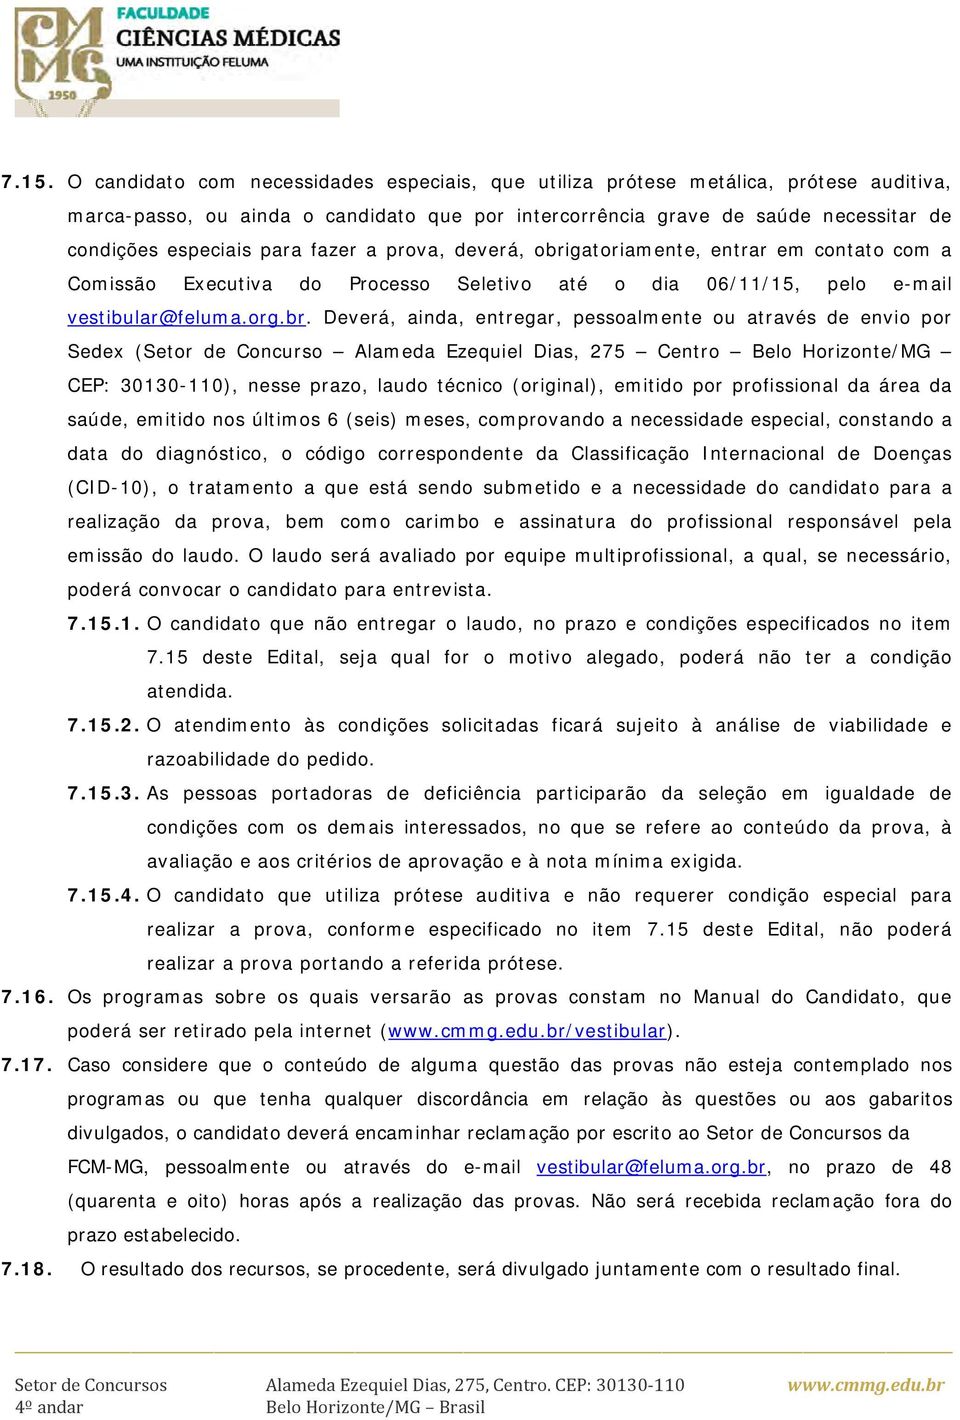 gatoriamente, entrar em contato com a Comissão Executiva do Processo Seletivo até o dia 06/11/15, pelo e-mail vestibular@feluma.org.br.